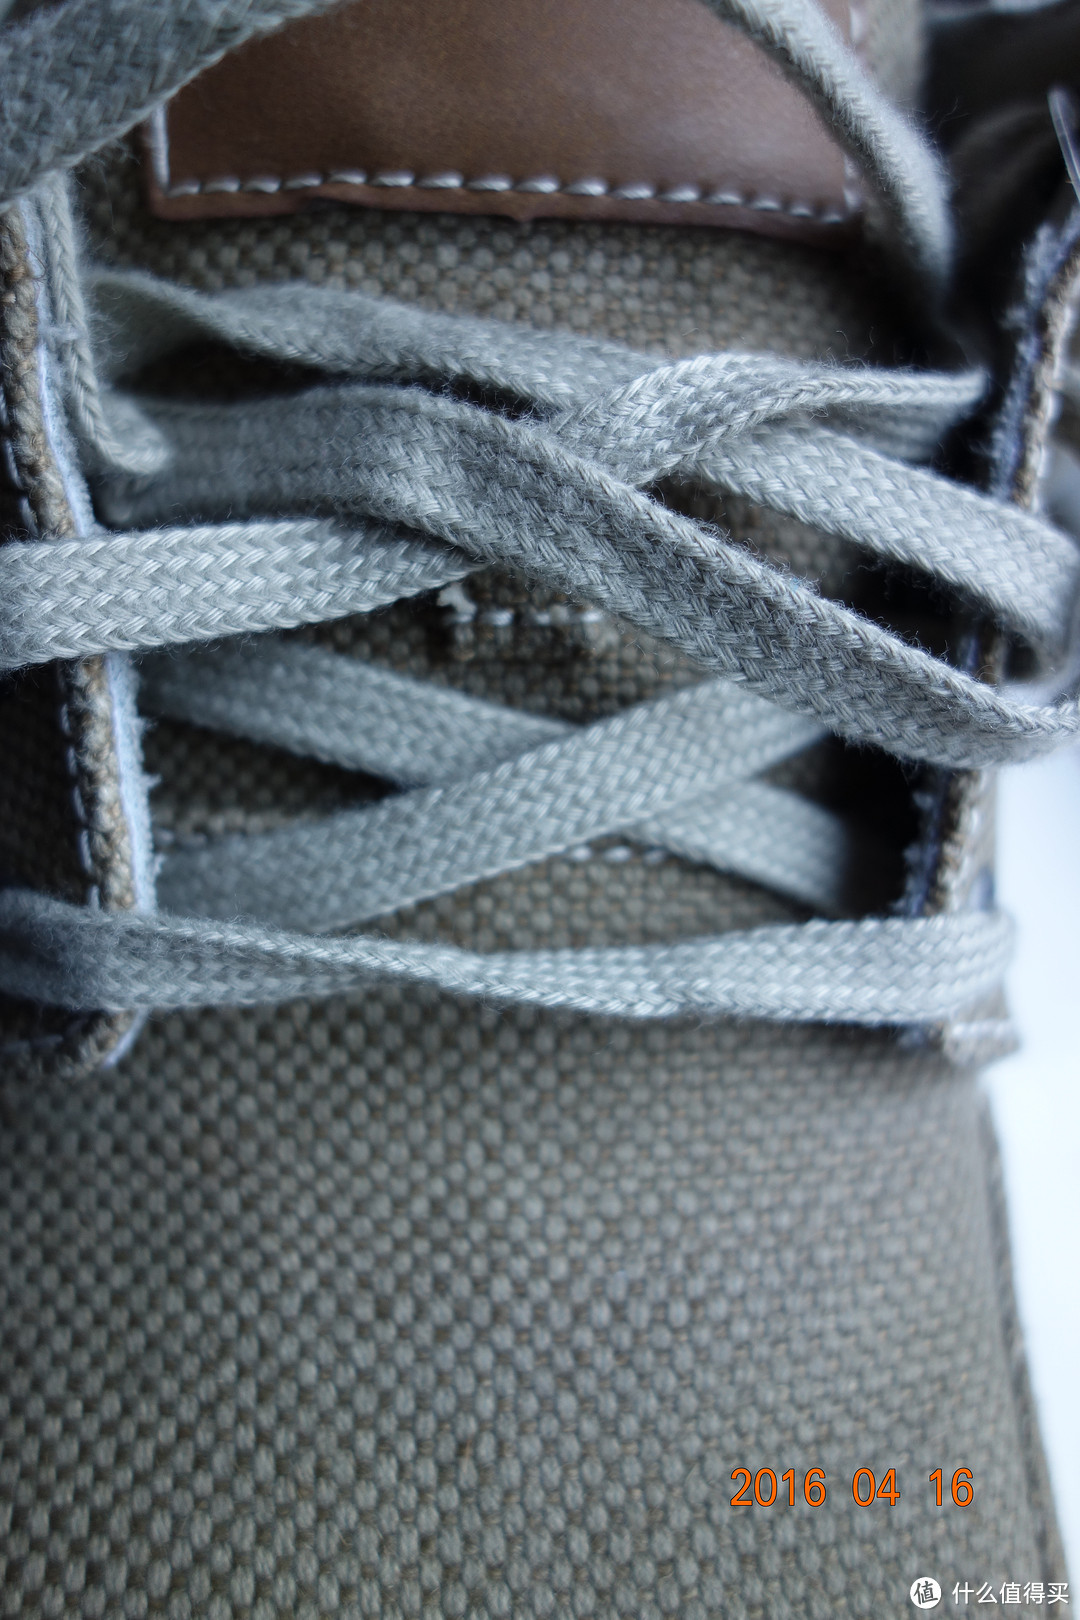 一次包邮的中亚海外购：SKECHERS USA Expected Orman 男款休闲鞋